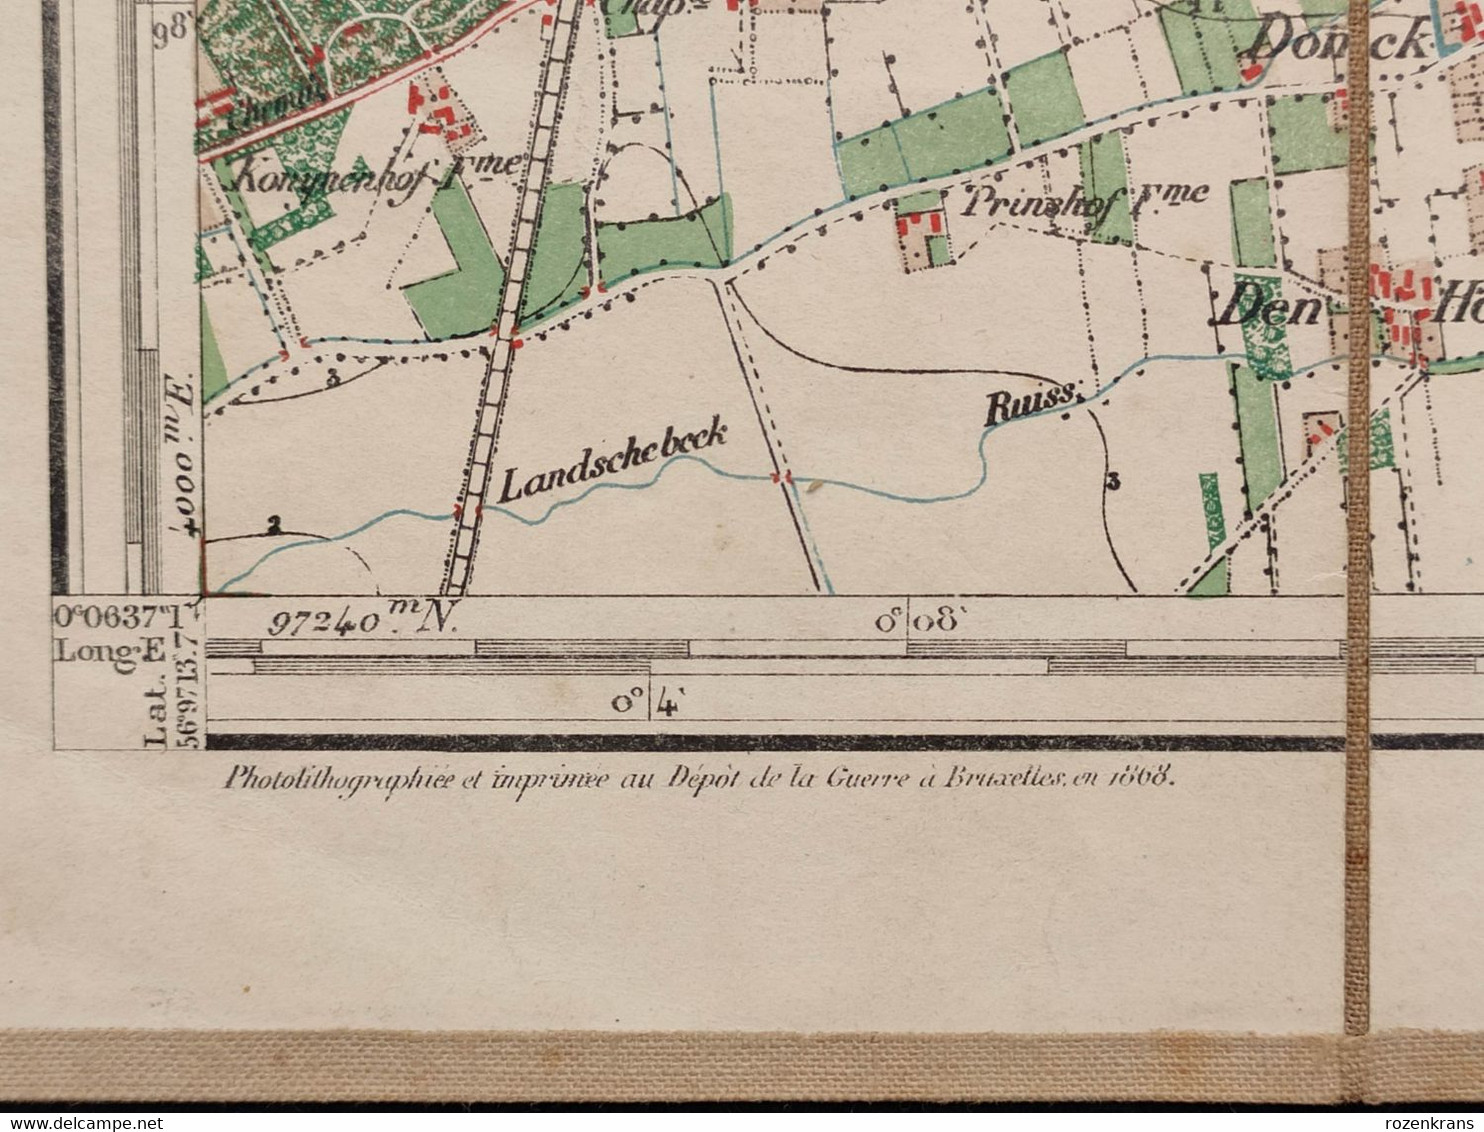 TOPSTUK 1868 Oude Topografische militaire kaart Brasschaat Kapellen Bist Schriek Kaart Donk Mik Elshout Kasteel Kamp van